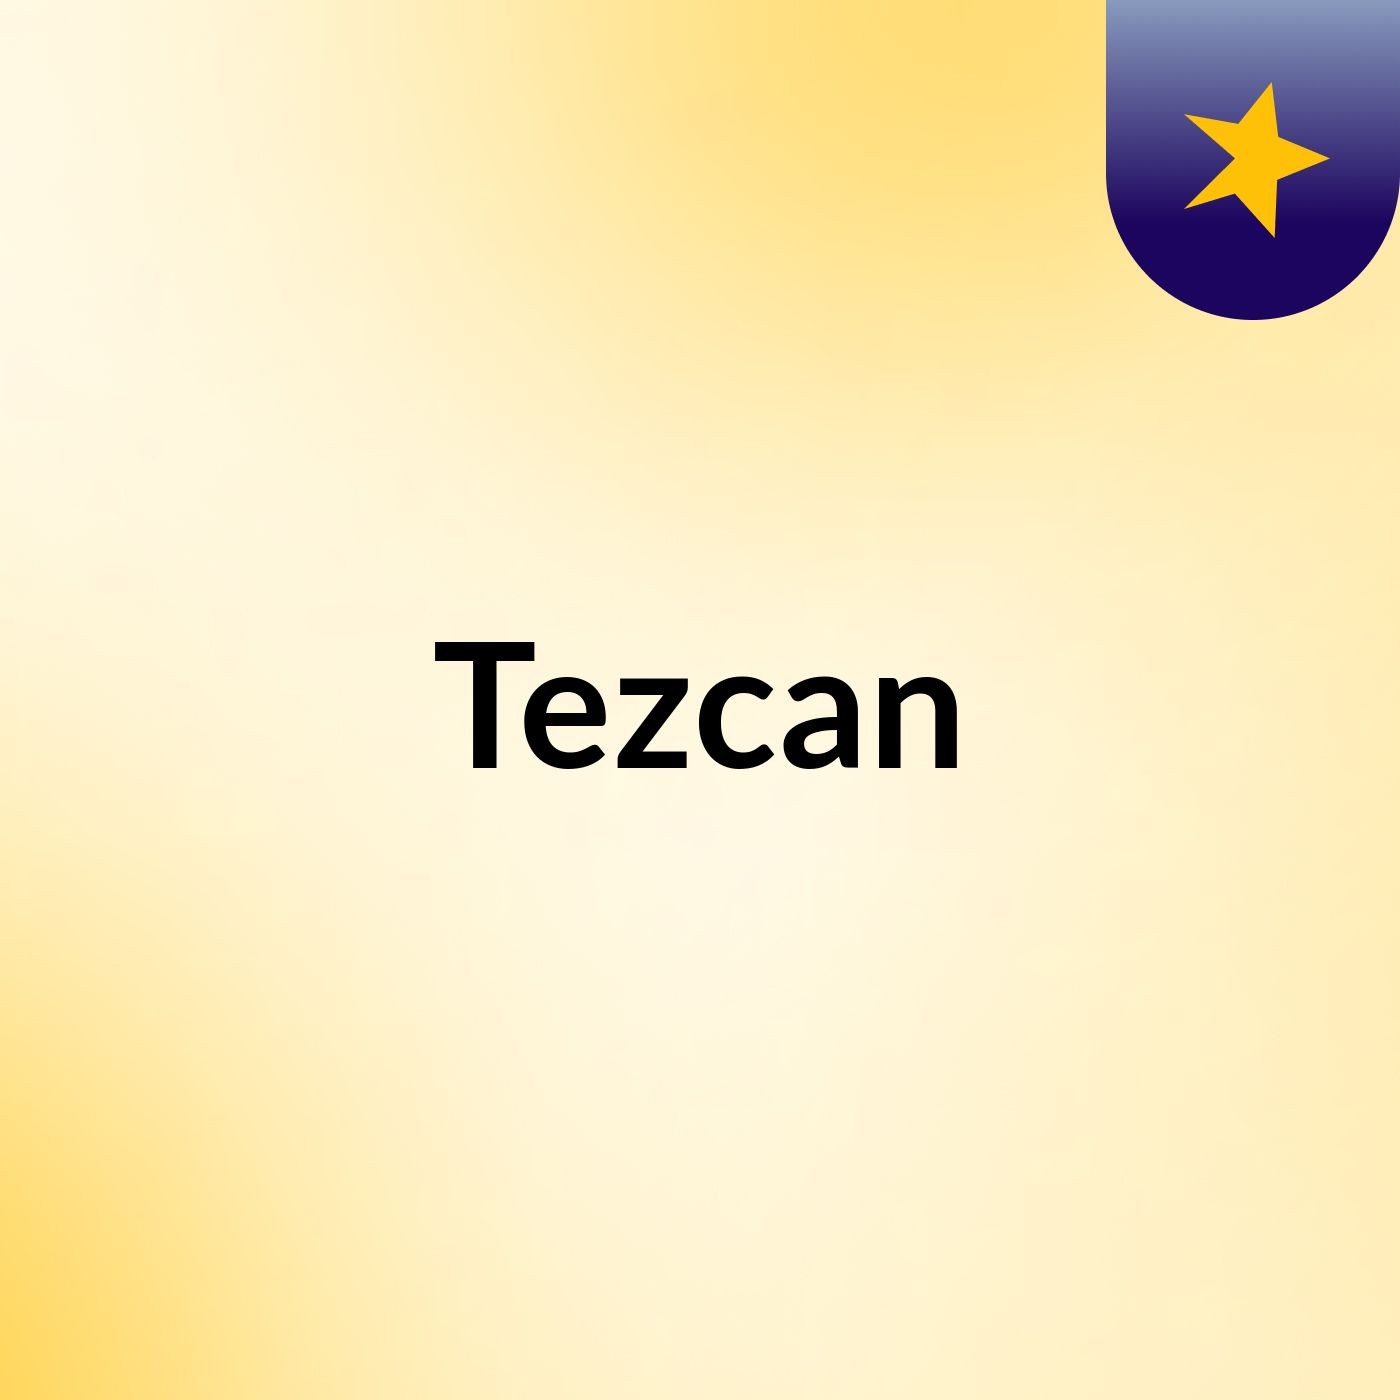 Tezcan